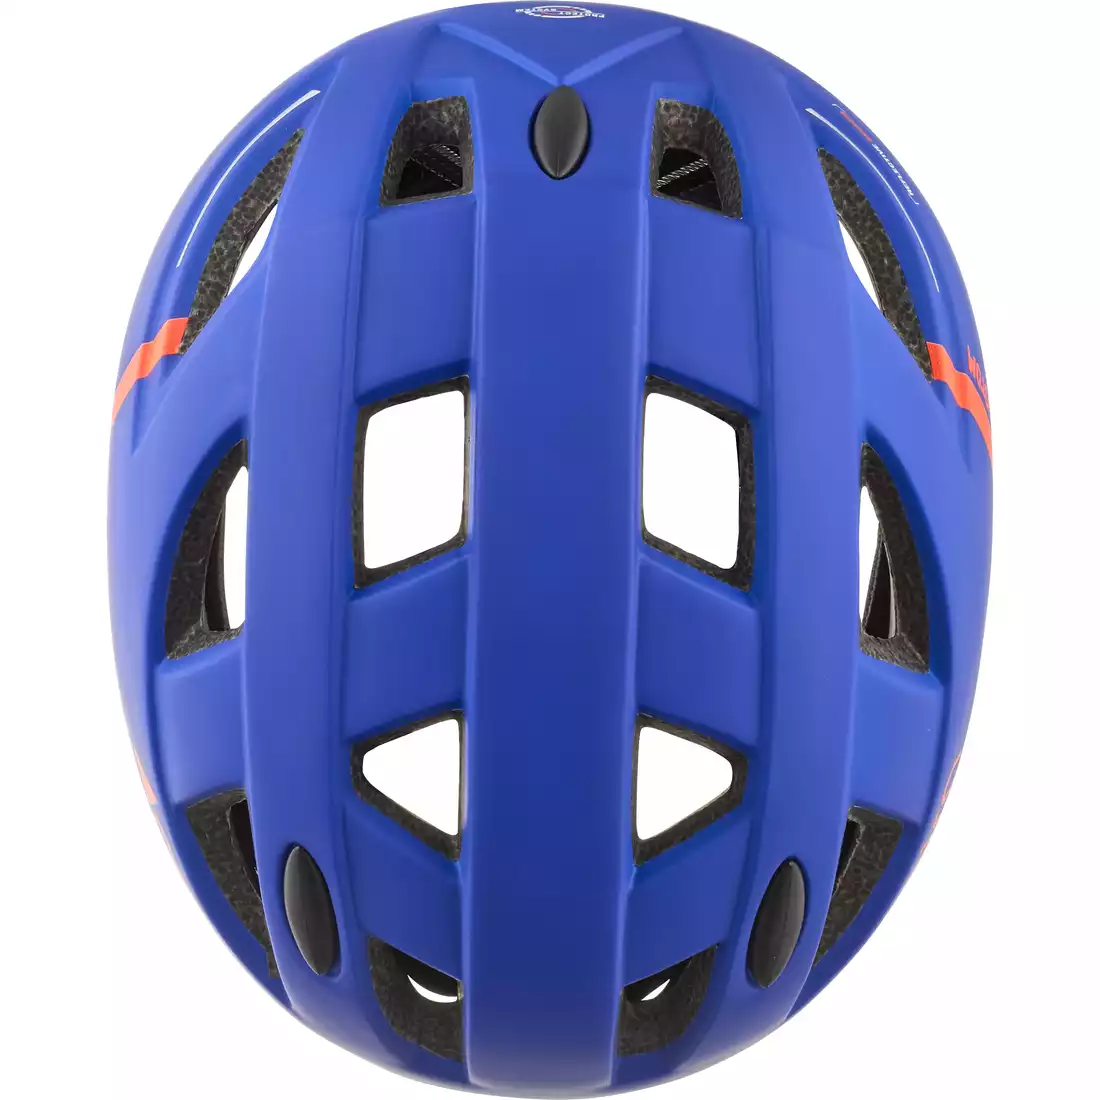 CAIRN kask rowerowy R KUSTOM niebieski